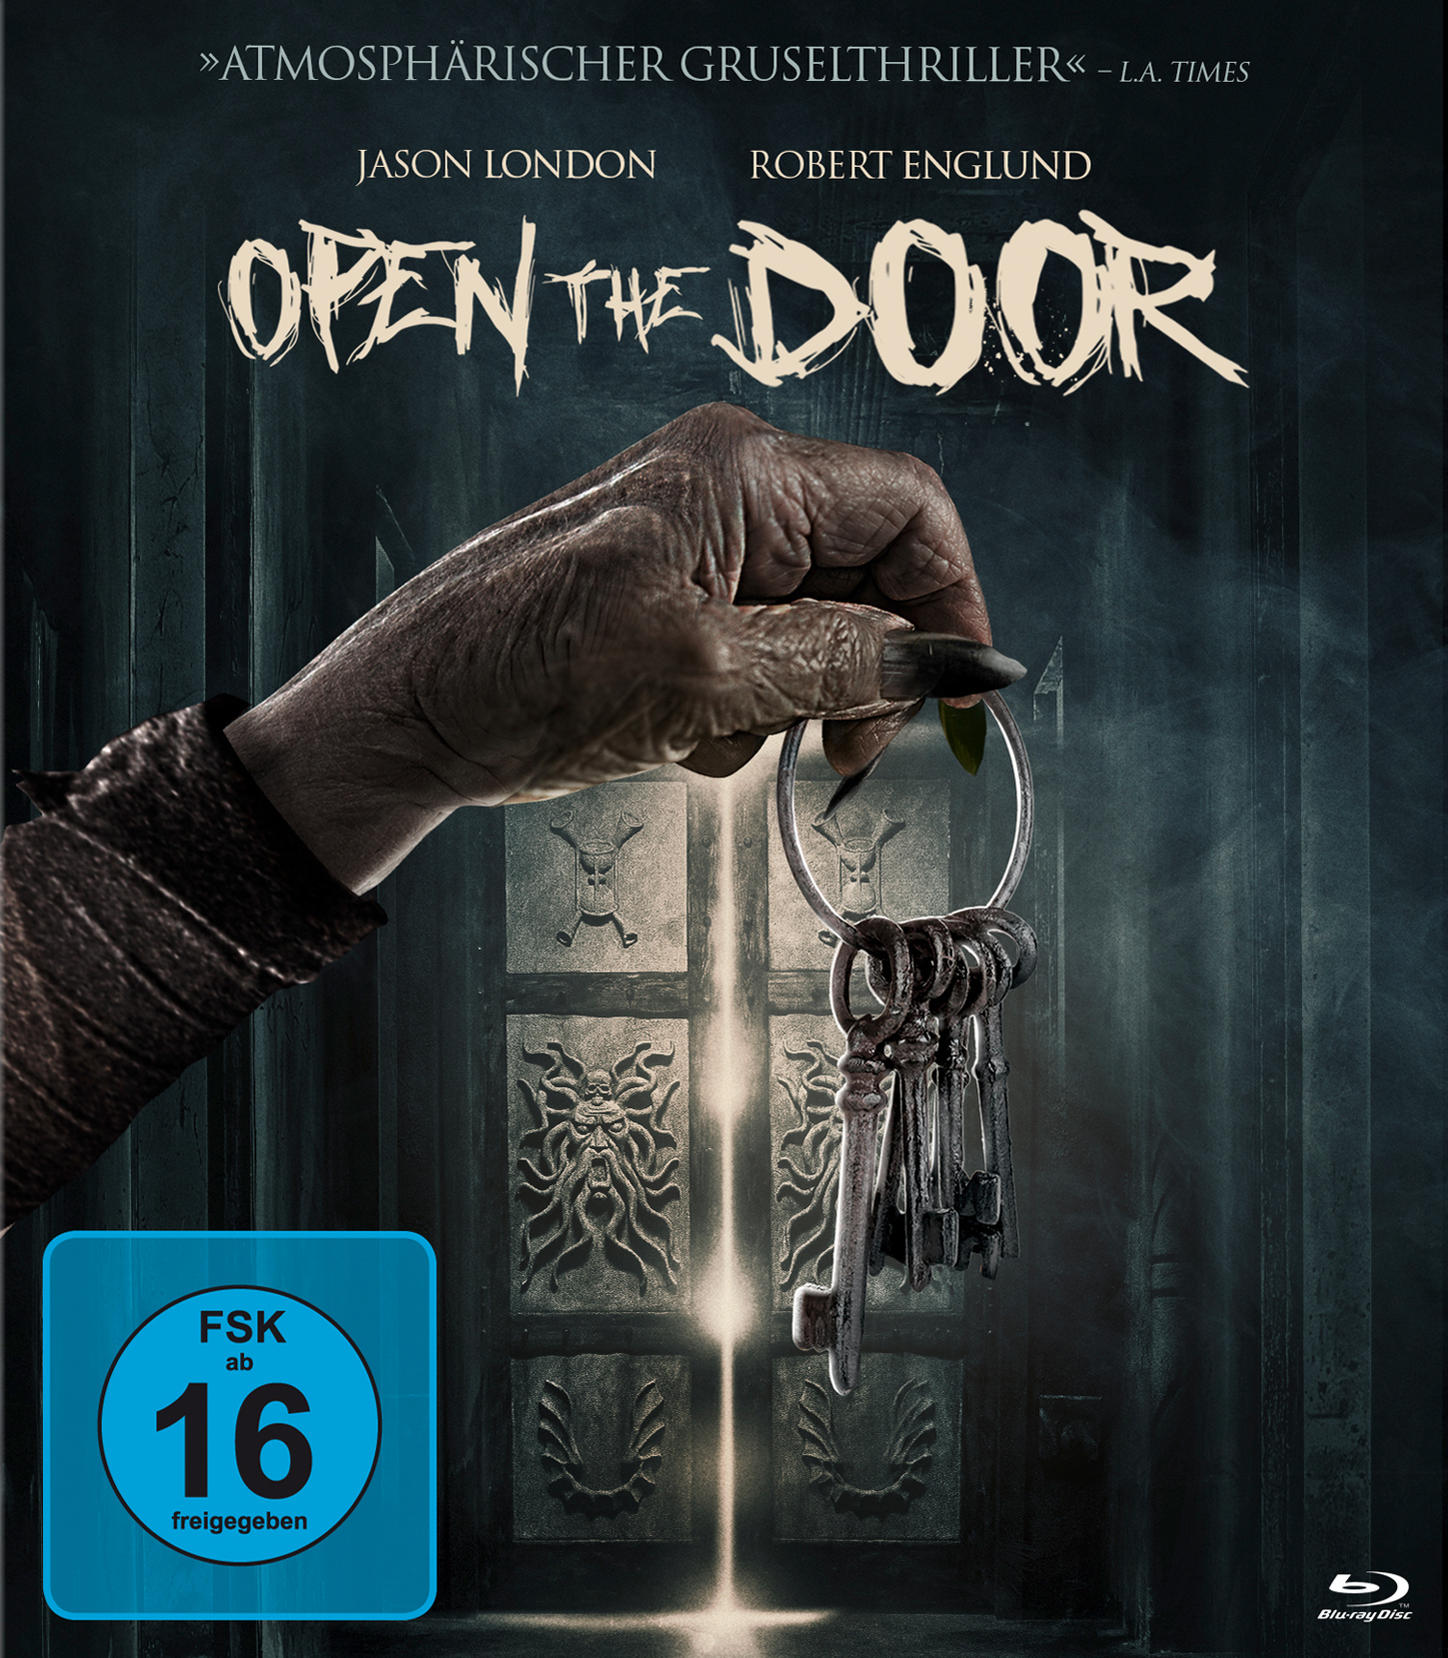 The Door Blu-ray Open